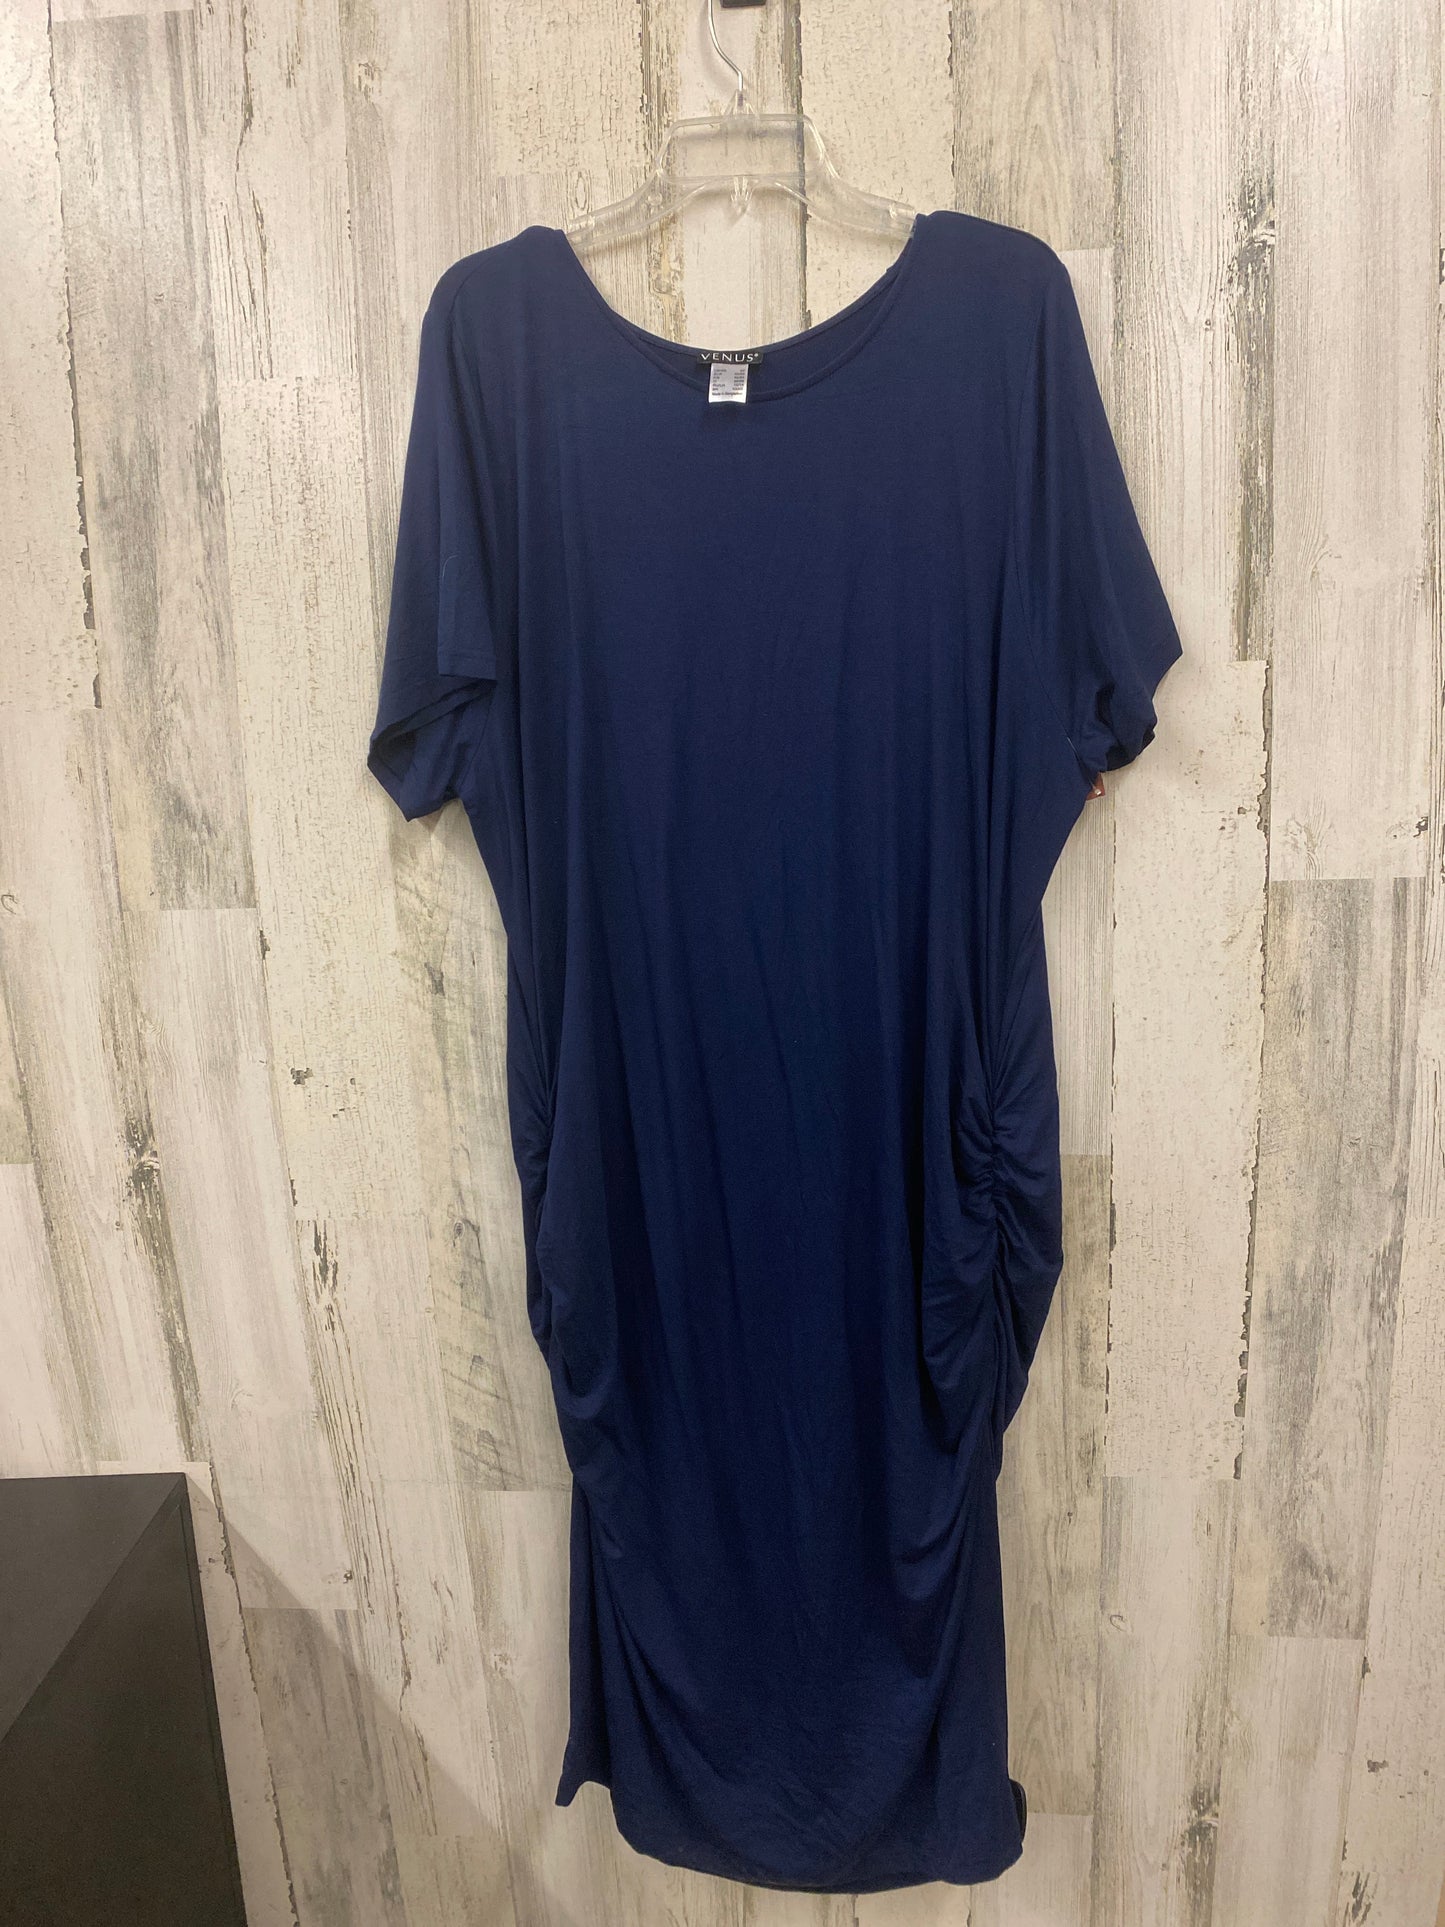 Dress Casual Midi By Venus  Size: 3x